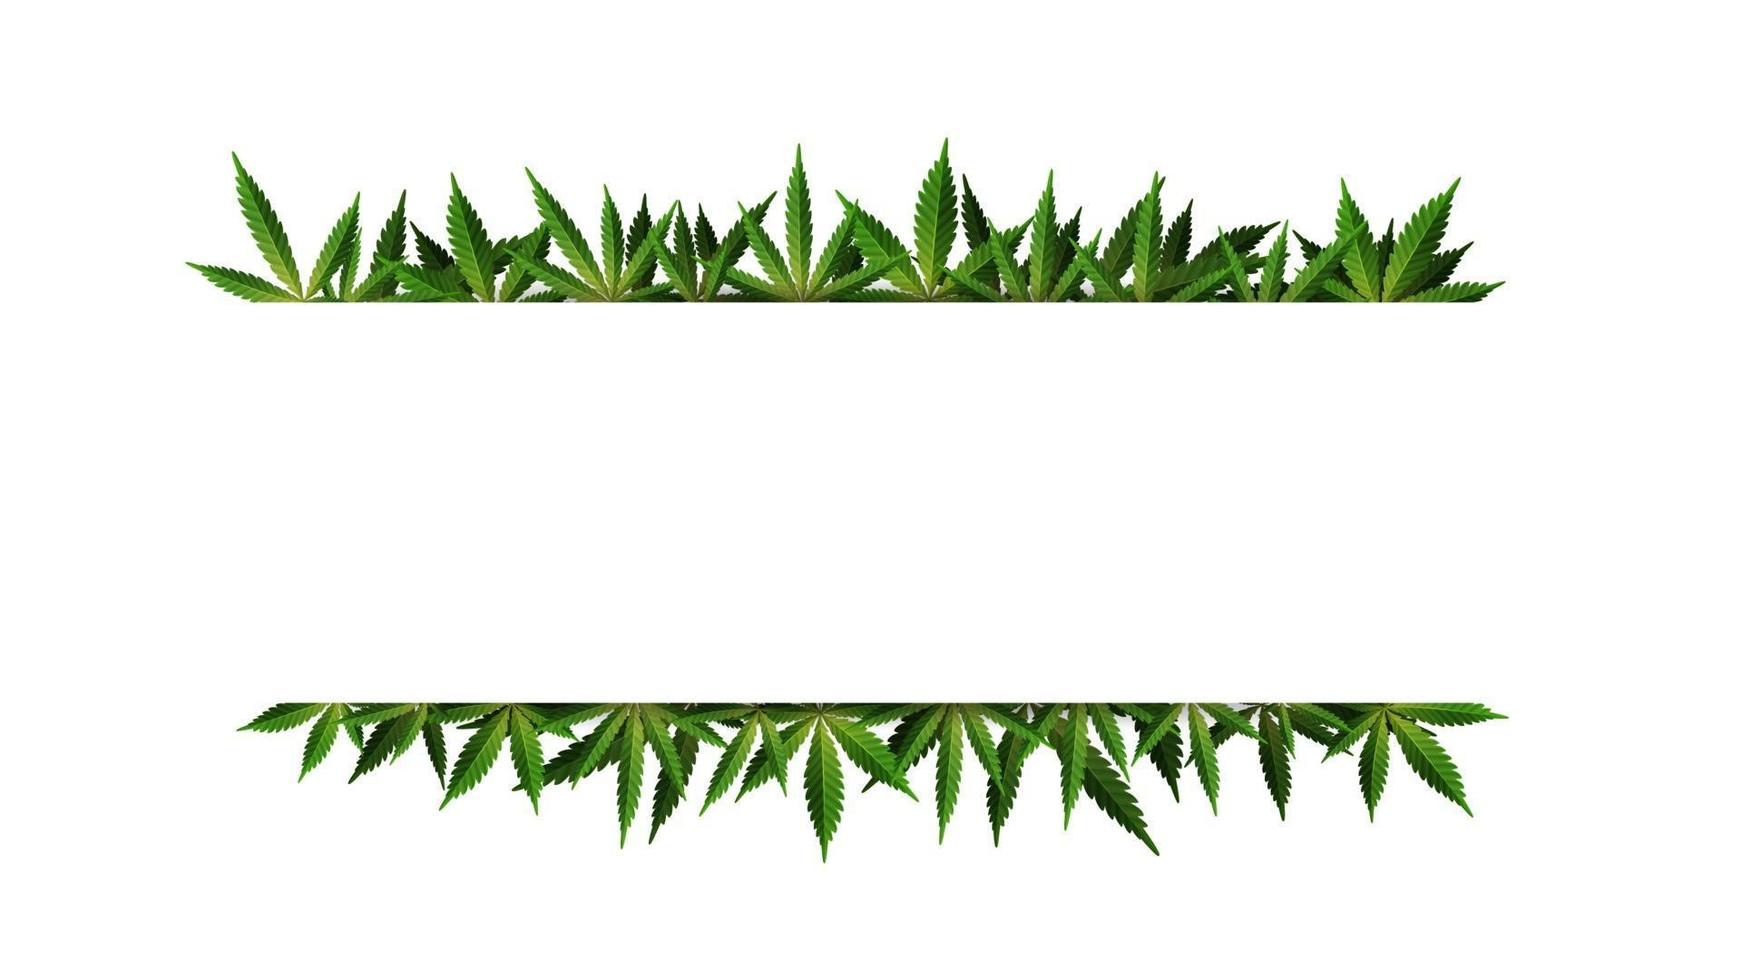 een rechthoekig frame van hennepbladeren rond een witte lege ruimte. cannabisbladkadersjabloon voor de cannabisindustrie vector